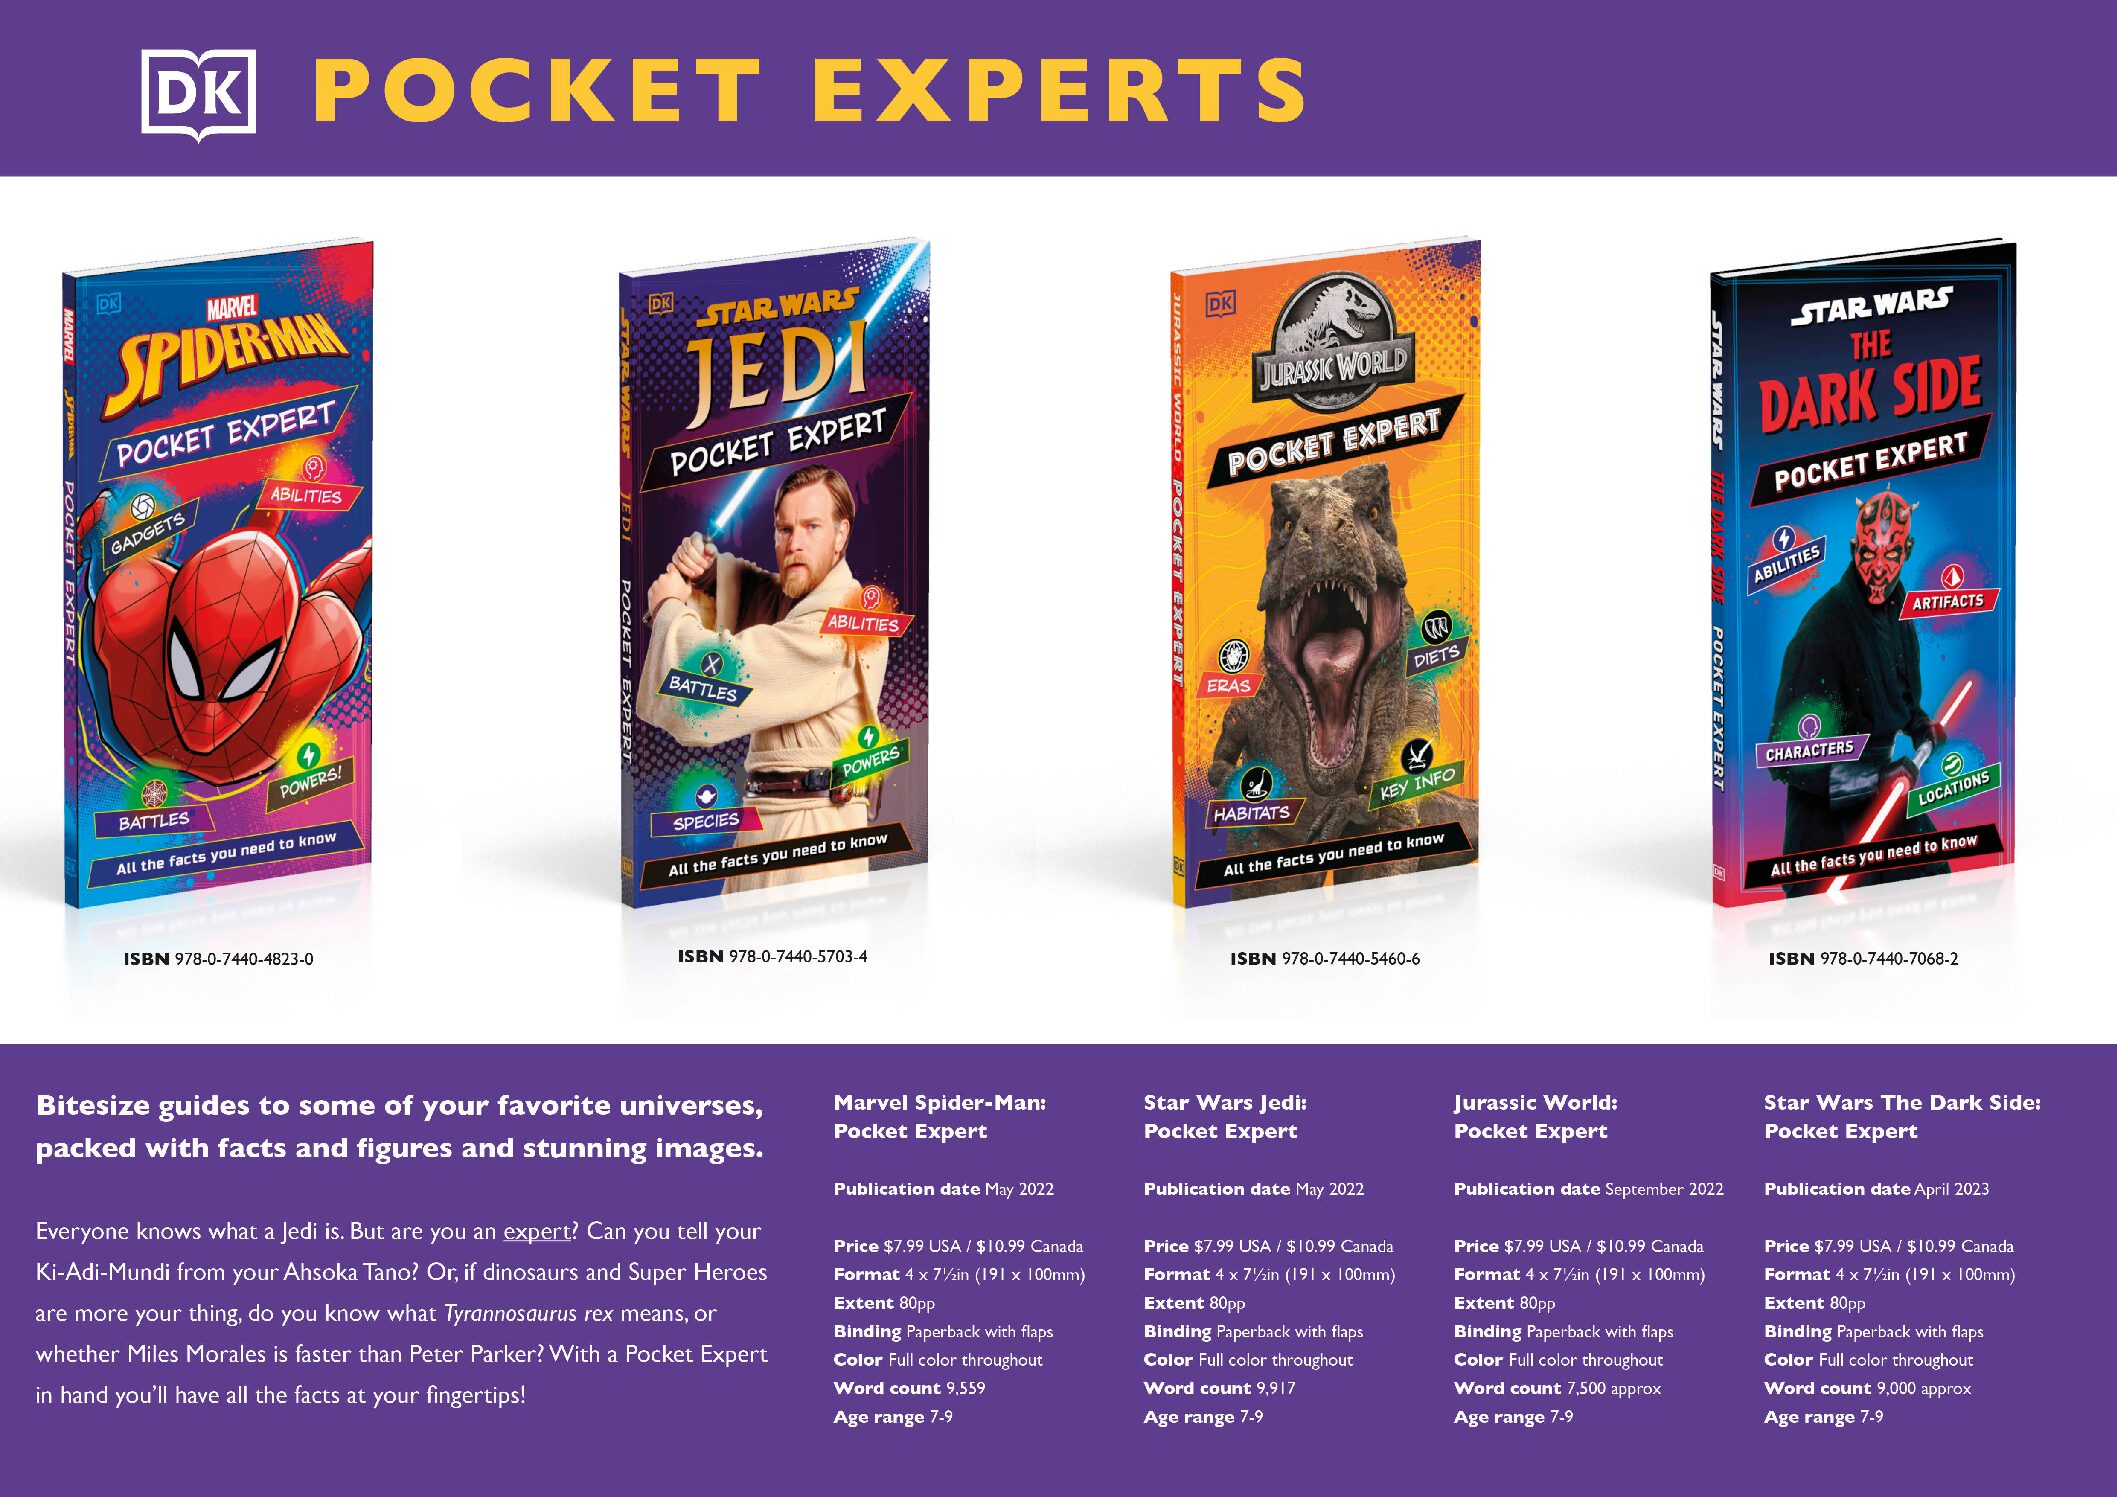 DK Pocket Experts cover